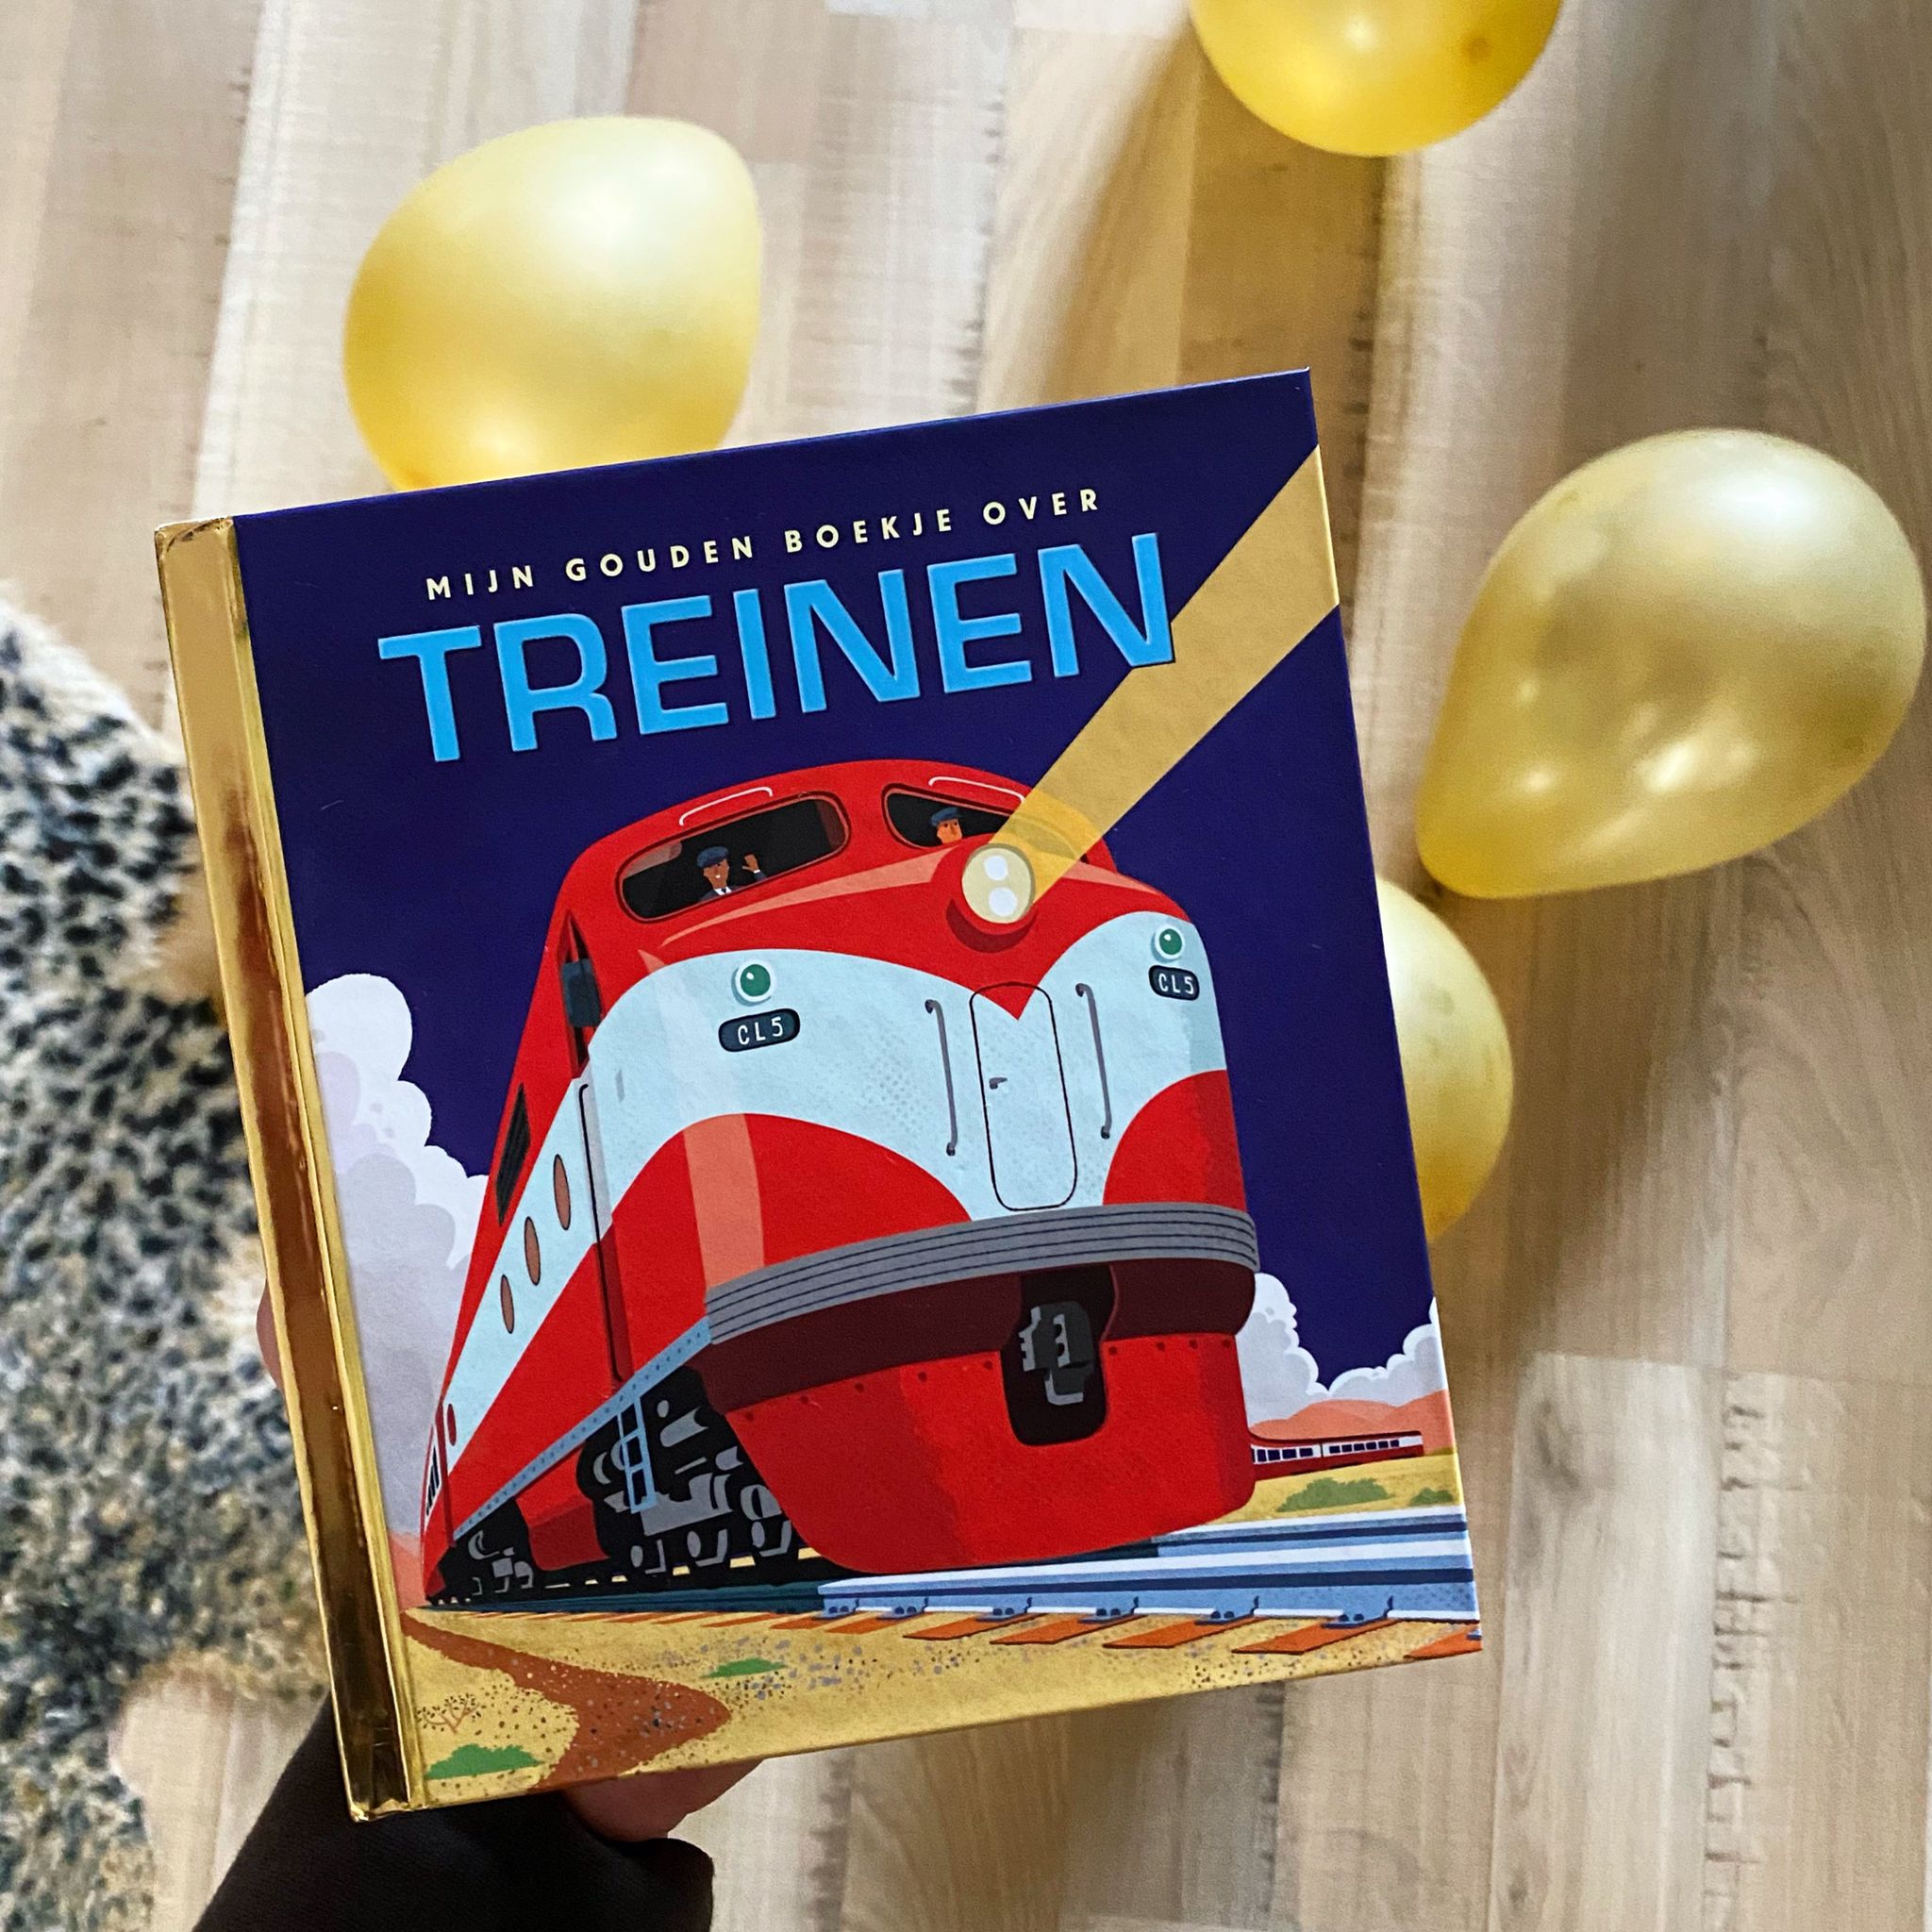 Mijn gouden boekje over treinen